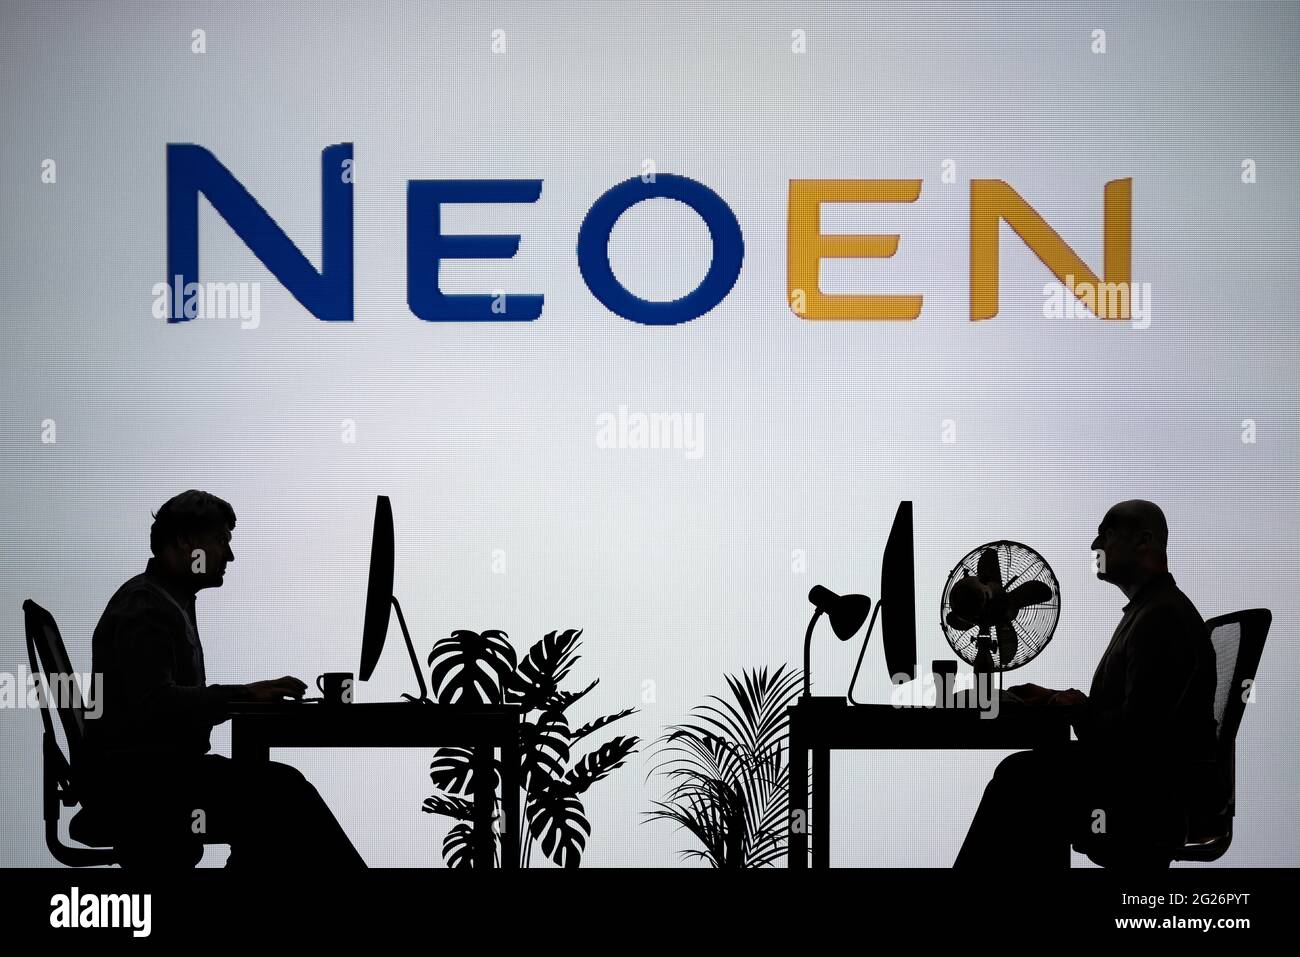 Il logo Neoen viene visualizzato su uno schermo LED sullo sfondo, mentre due persone con silhouette lavorano in un ambiente d'ufficio (solo per uso editoriale) Foto Stock